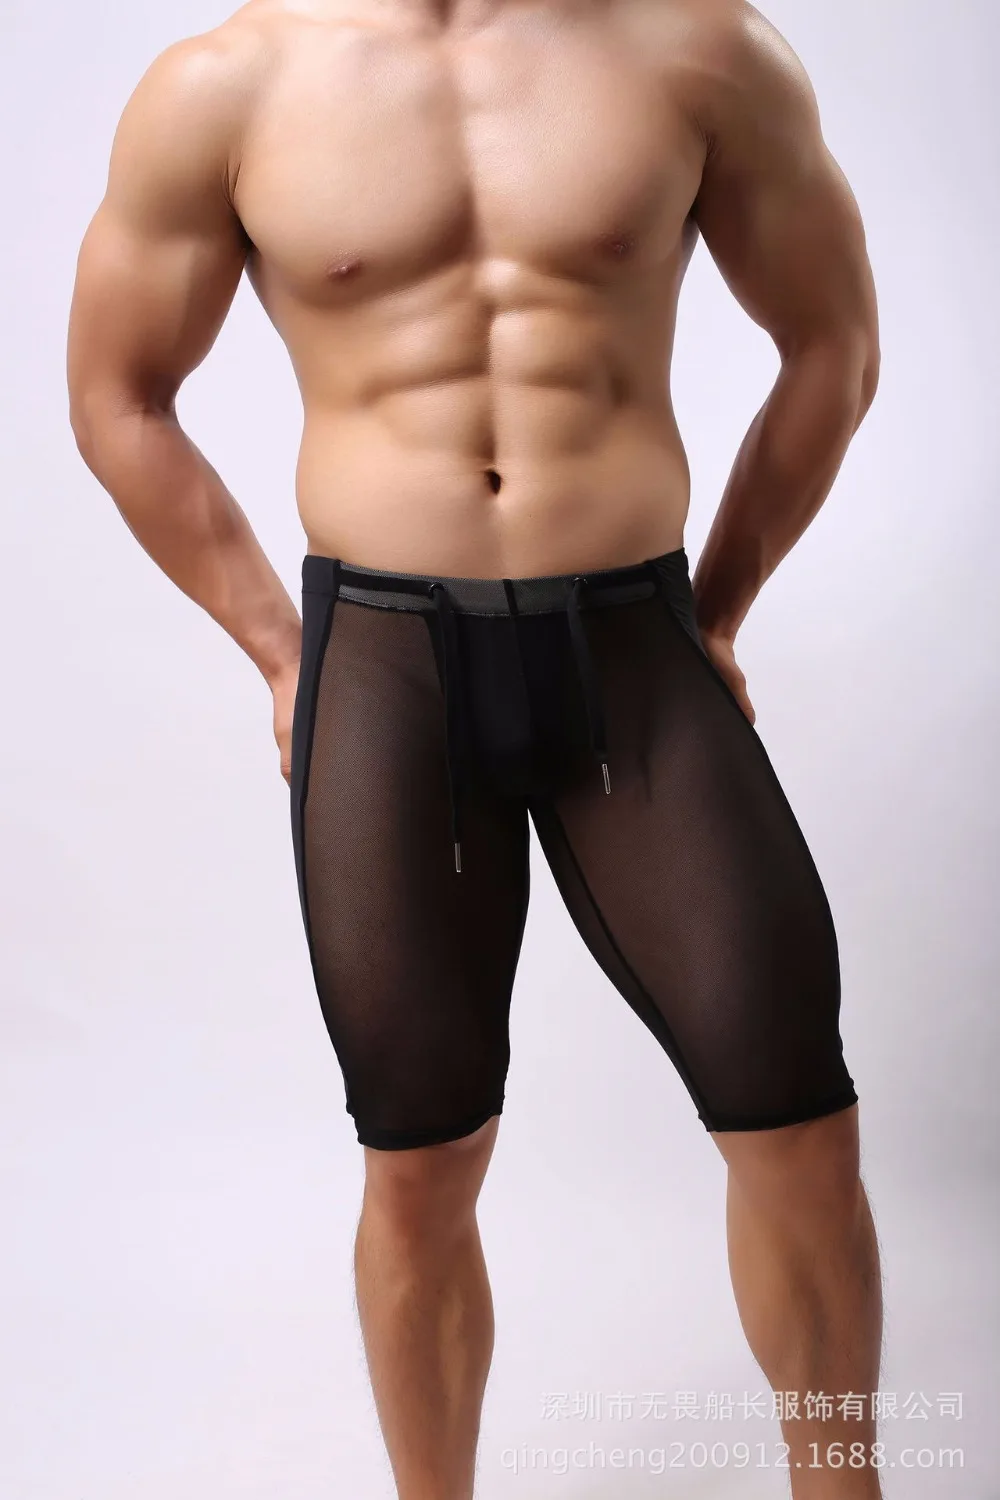 Brave person Новые продукты высокого качества мужские многофункциональные спортивные брюки узкие брюки для спортзала дышащие шорты